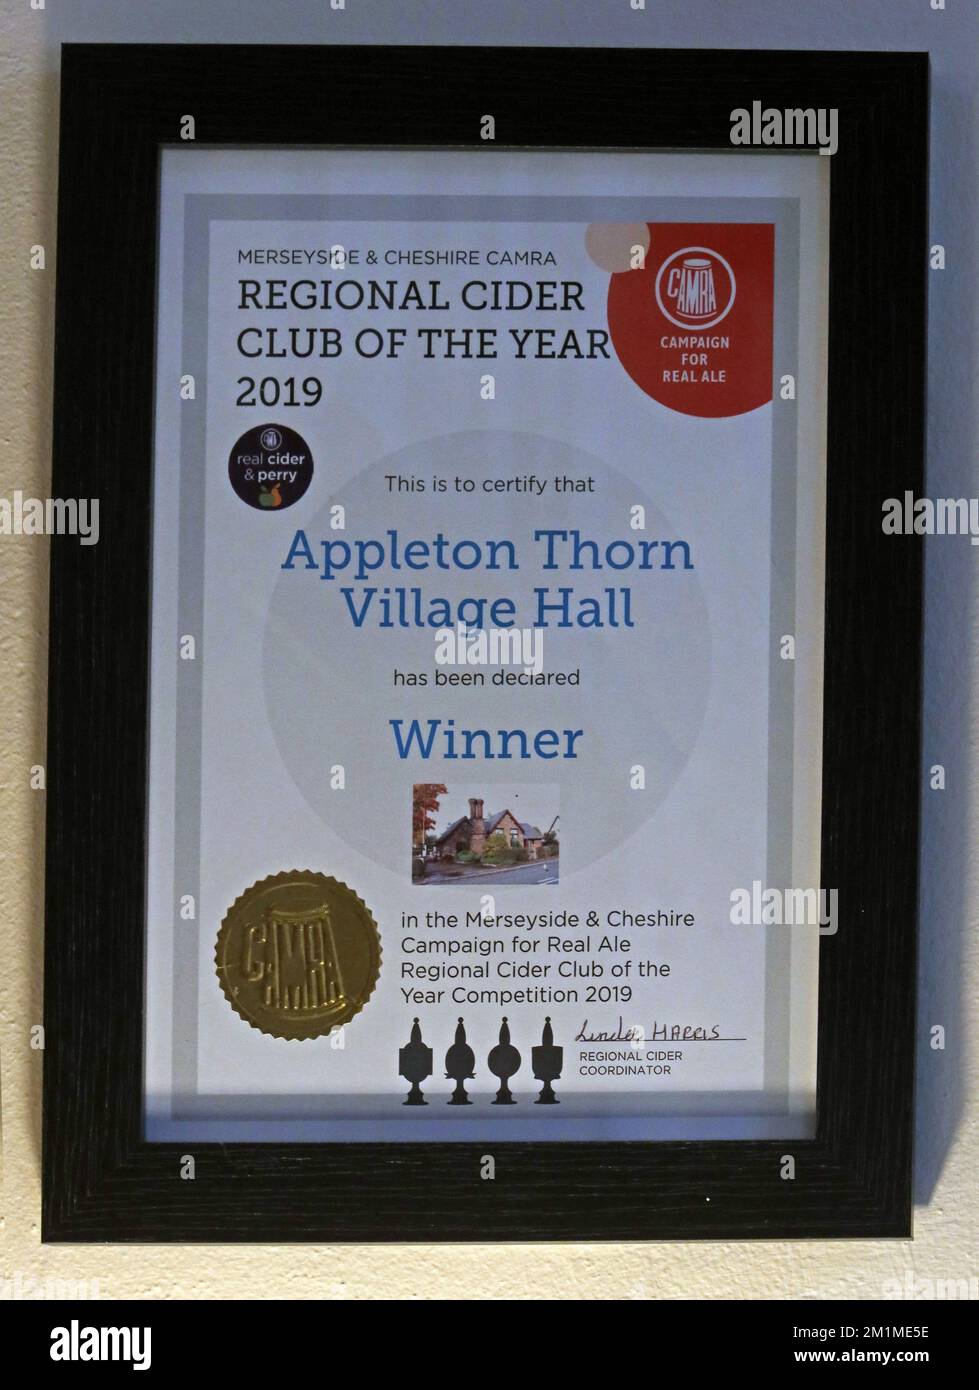 Merseyside & Cheshire CAMRA, Regional Cider Club of the Year 2019, Appleton Thorn Village Hall, certificato incorniciato del vincitore Foto Stock